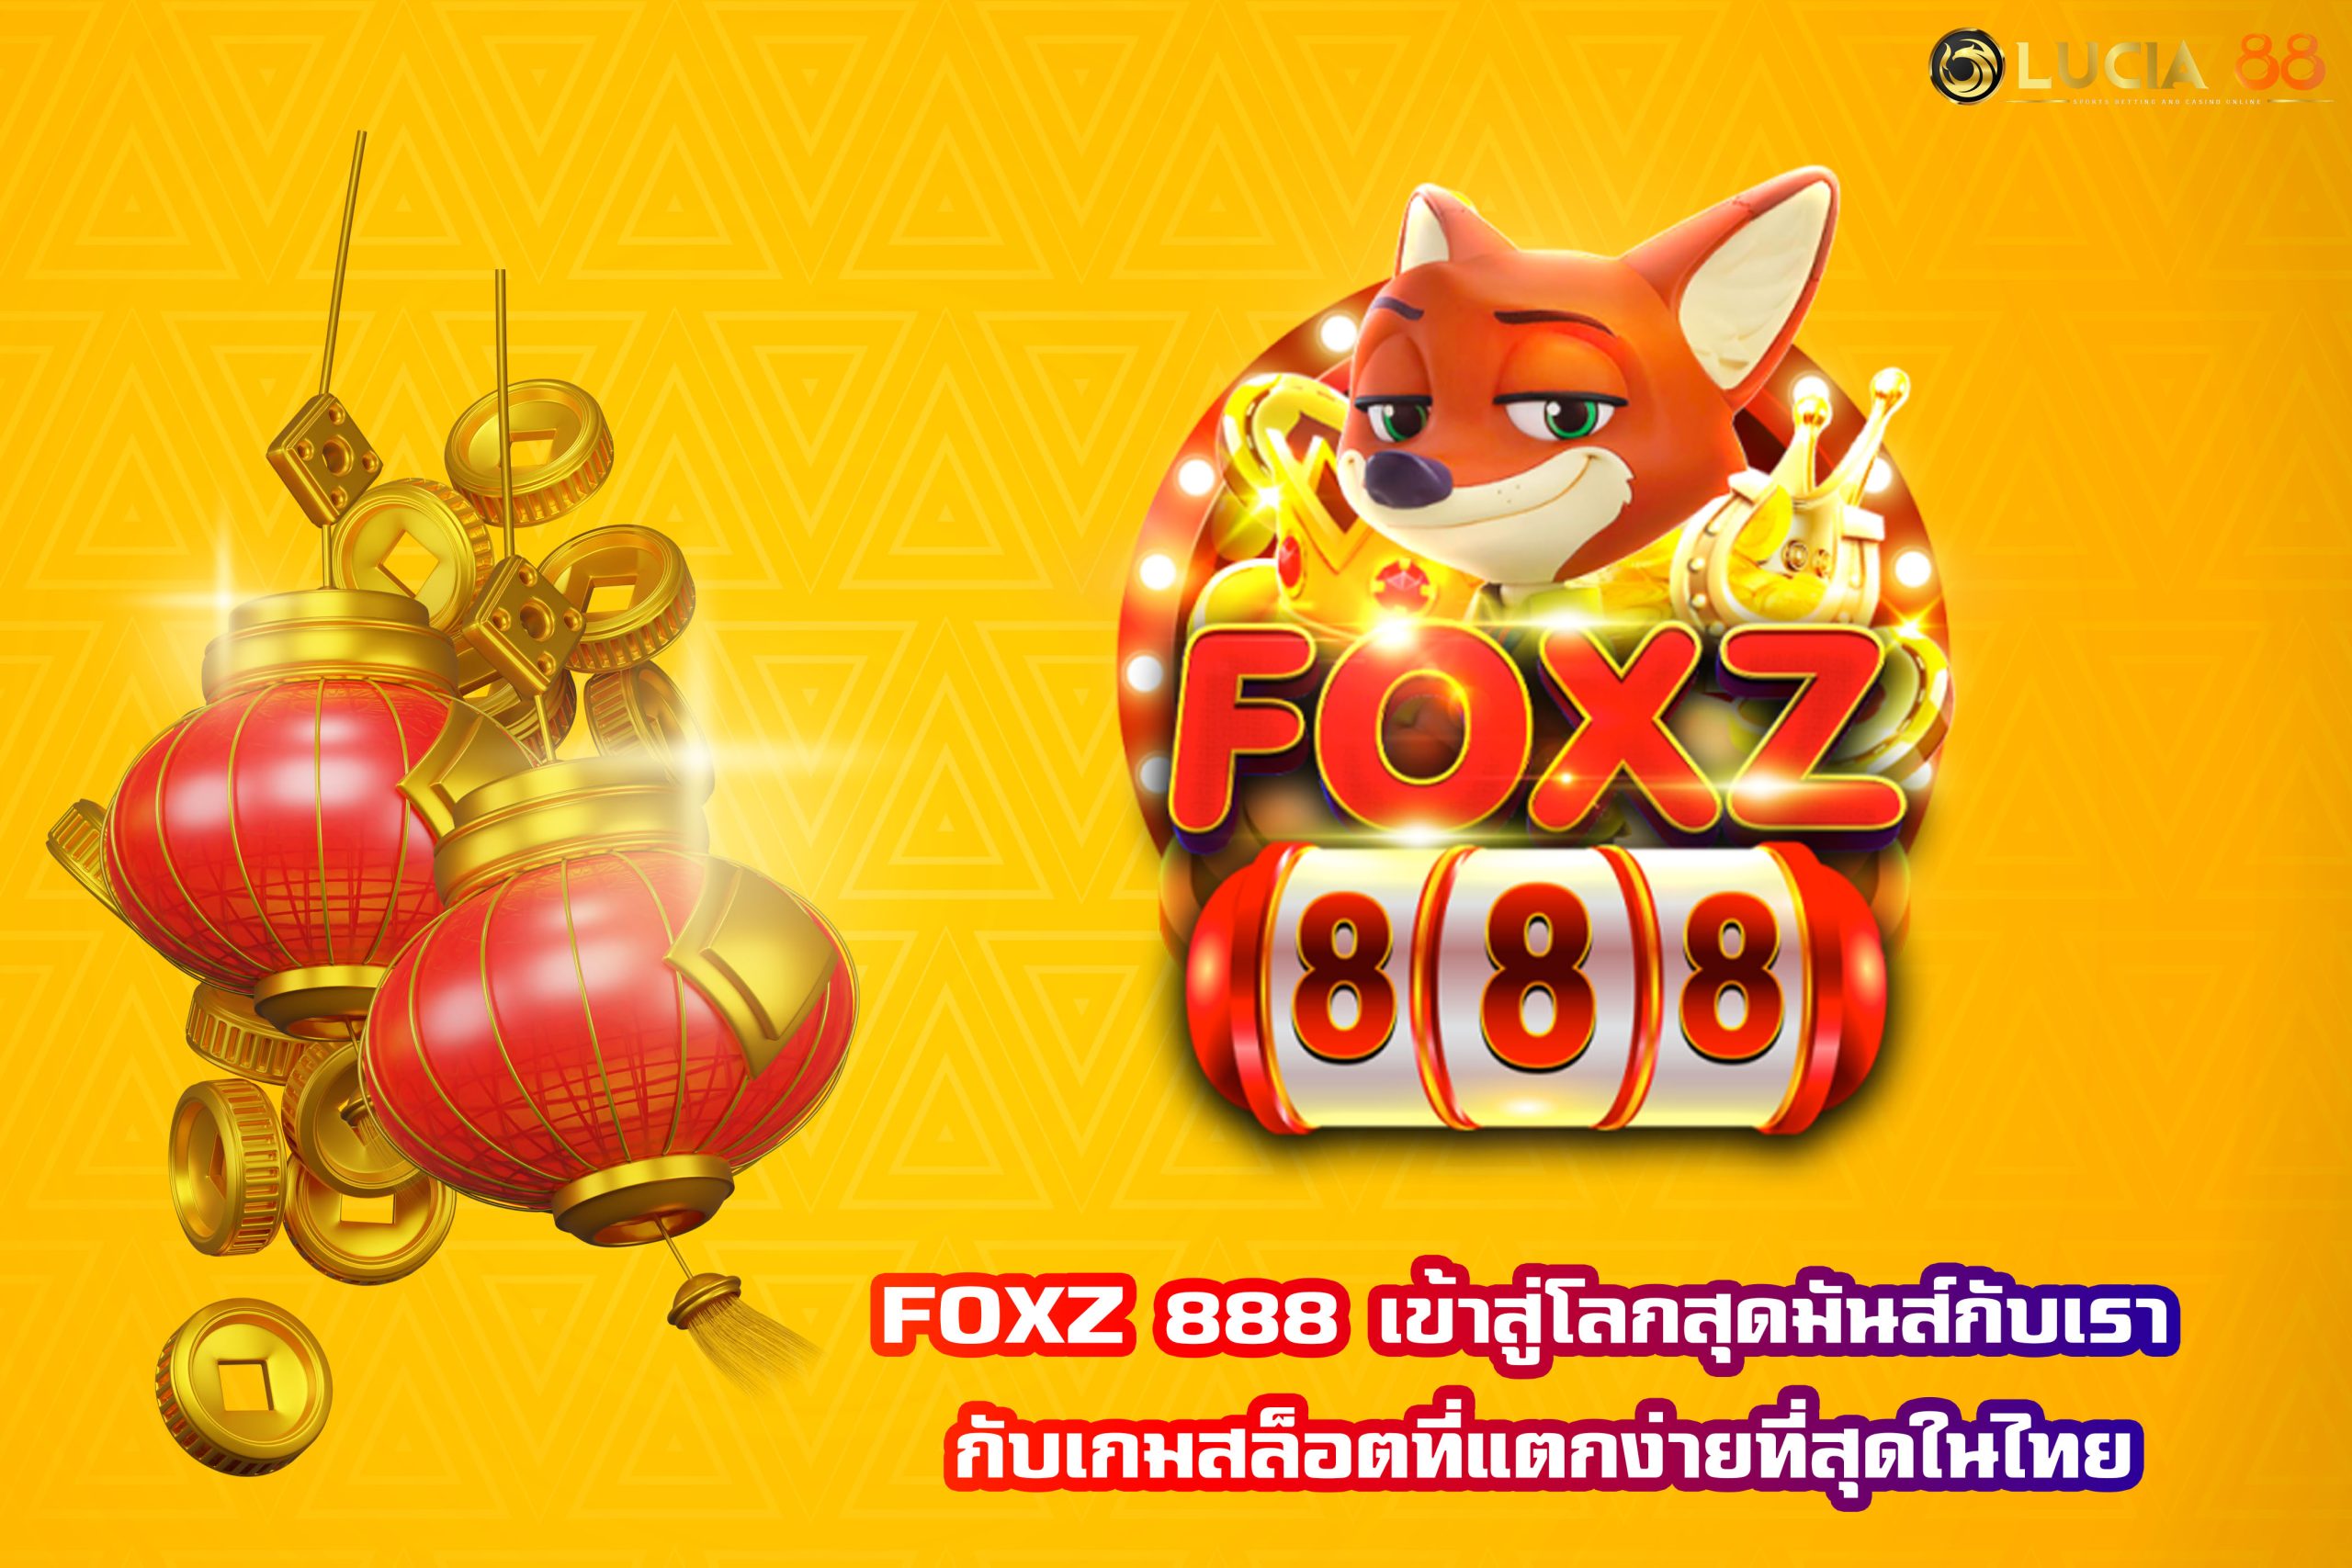 FOXZ 888 เข้าสู่โลกสุดมันส์กับเรา กับเกมสล็อตที่แตกง่ายที่สุดในไทย